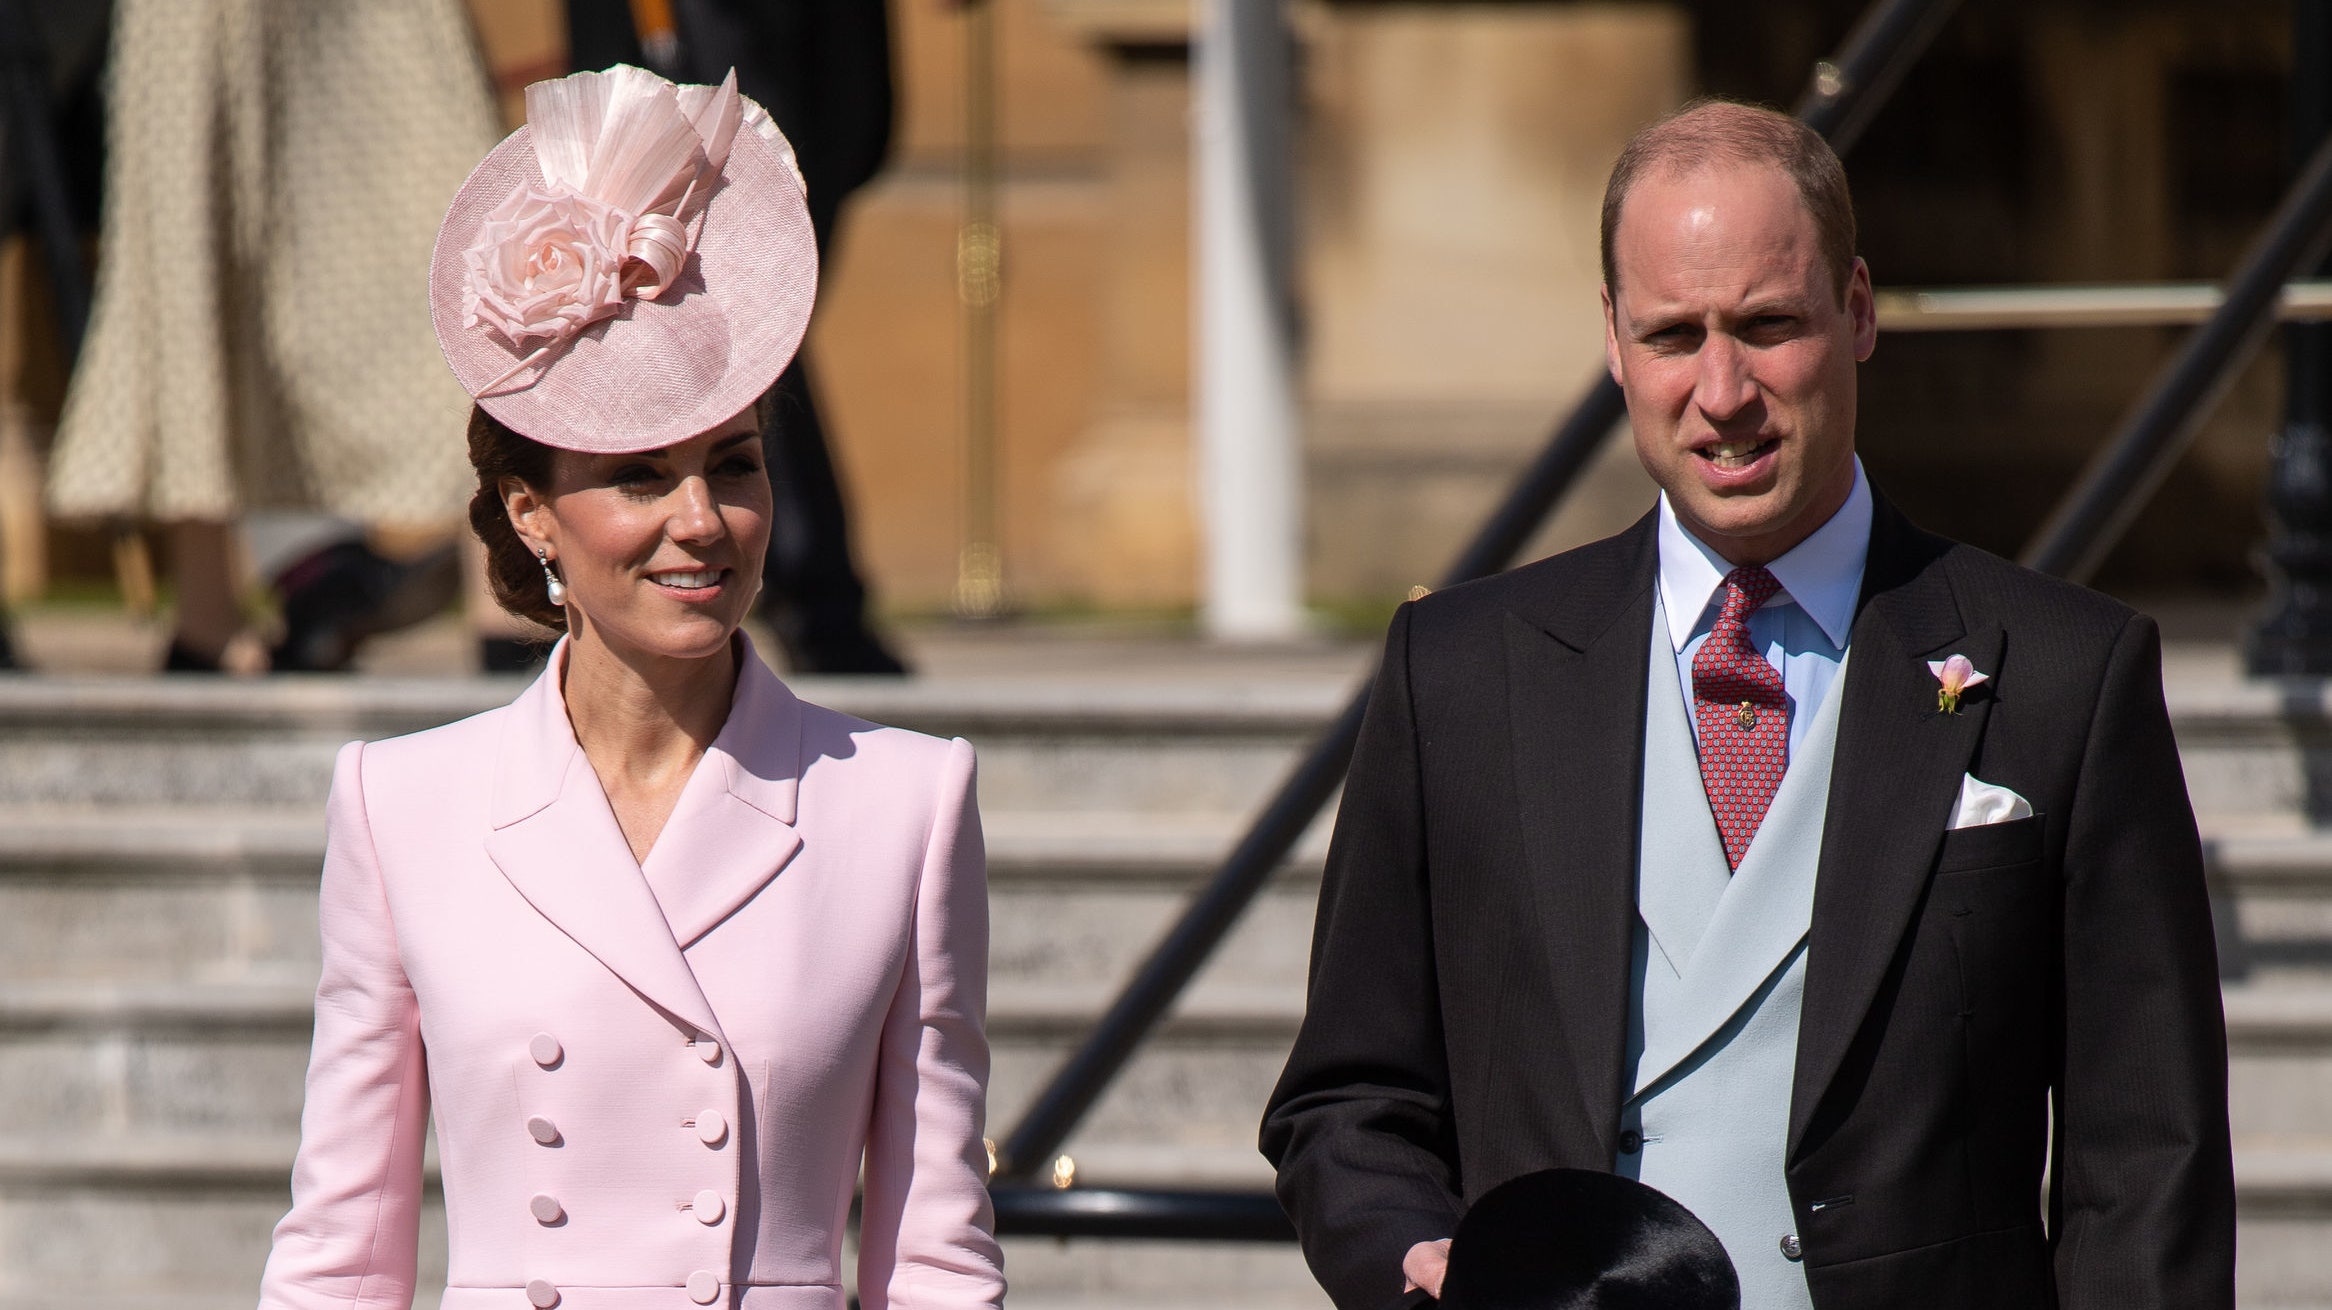 Кейт Миддлтон и принц Уильям на садовой вечеринке Елизаветы II